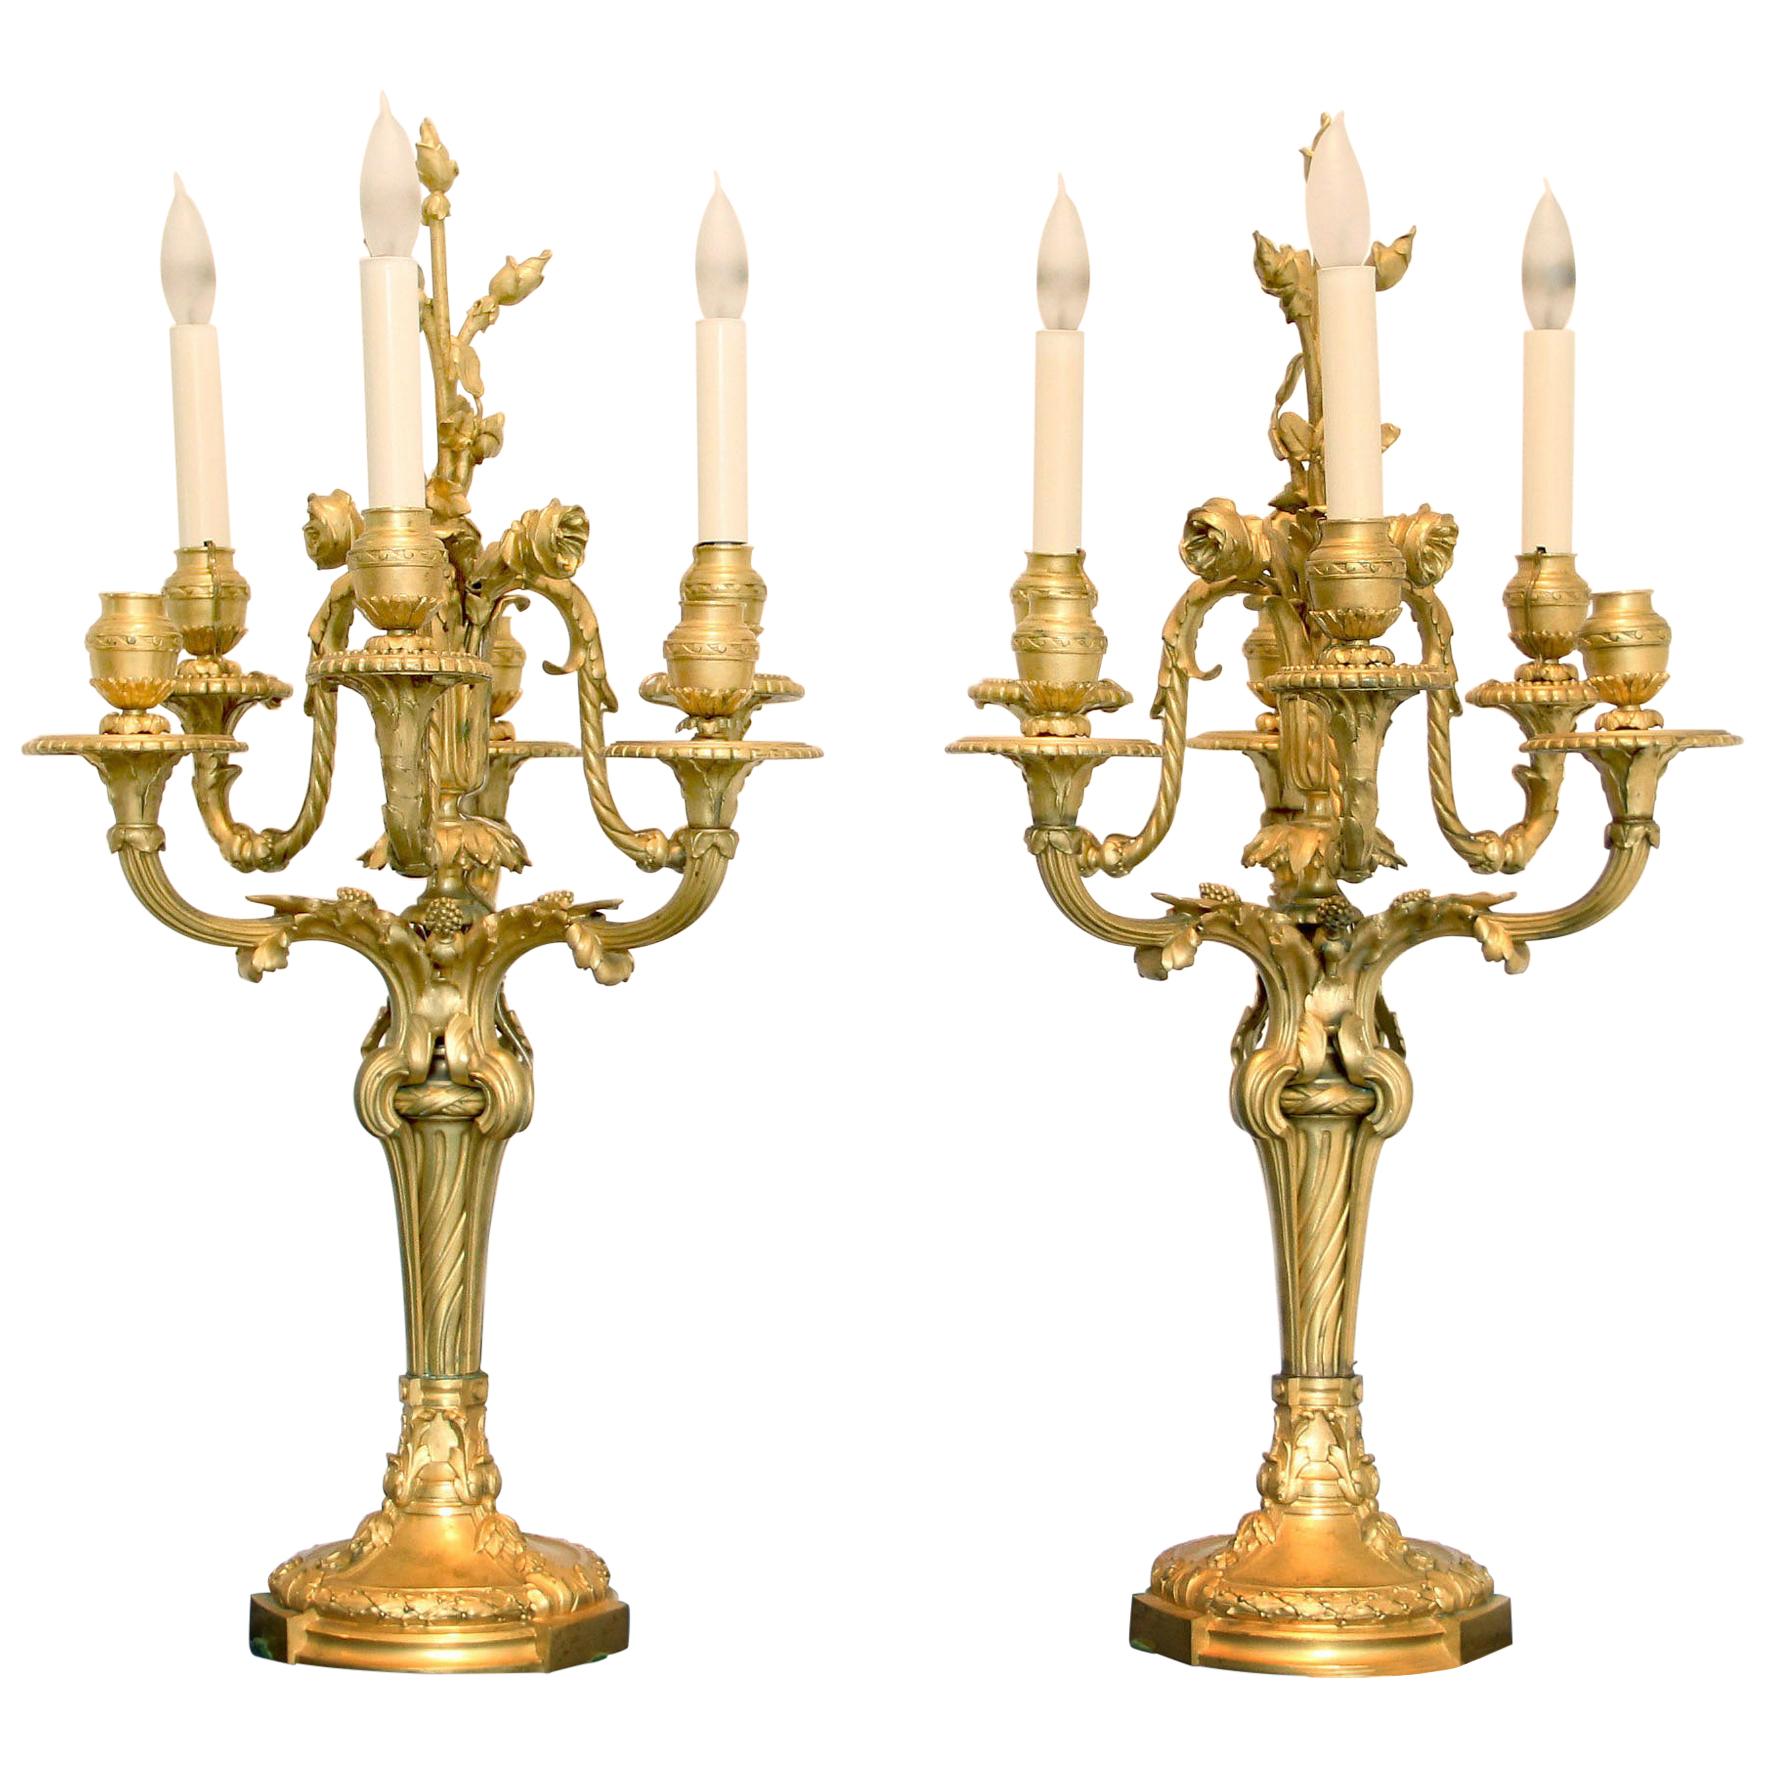 Fantastique paire de candélabres à six bras en bronze doré de la fin du XIXe siècle de qualité supérieure